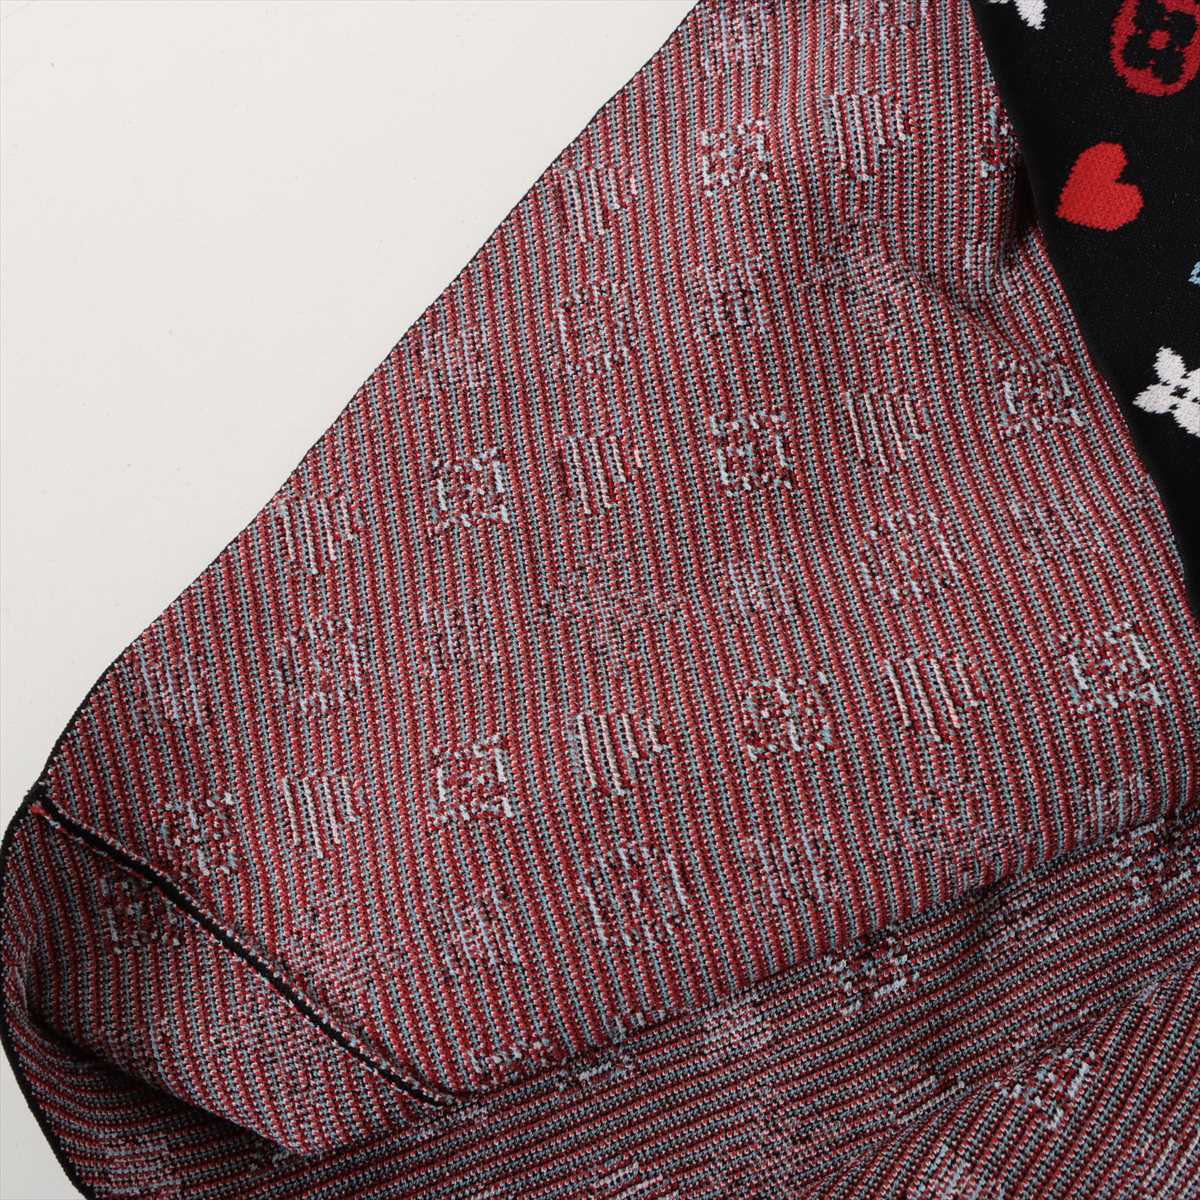 Louis Vuitton 21SS Polyester × Rayon Knit dress XS Ladies' Black  RW211A Monogram